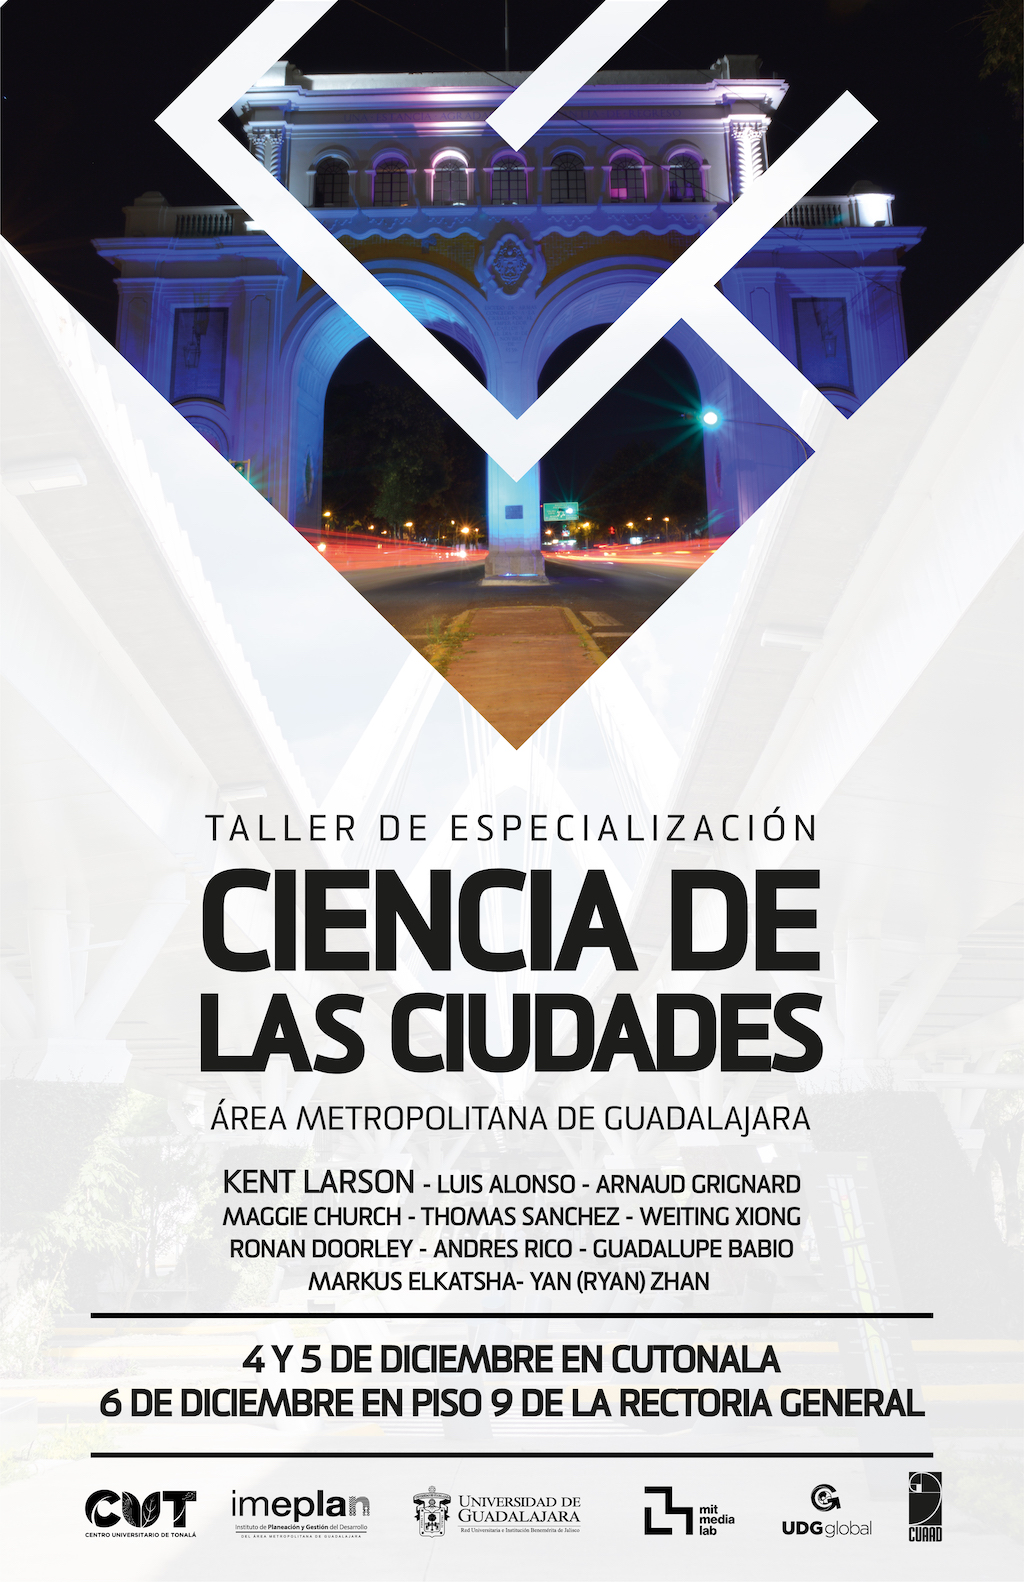 Taller de especialización en Ciencia de las Ciudades